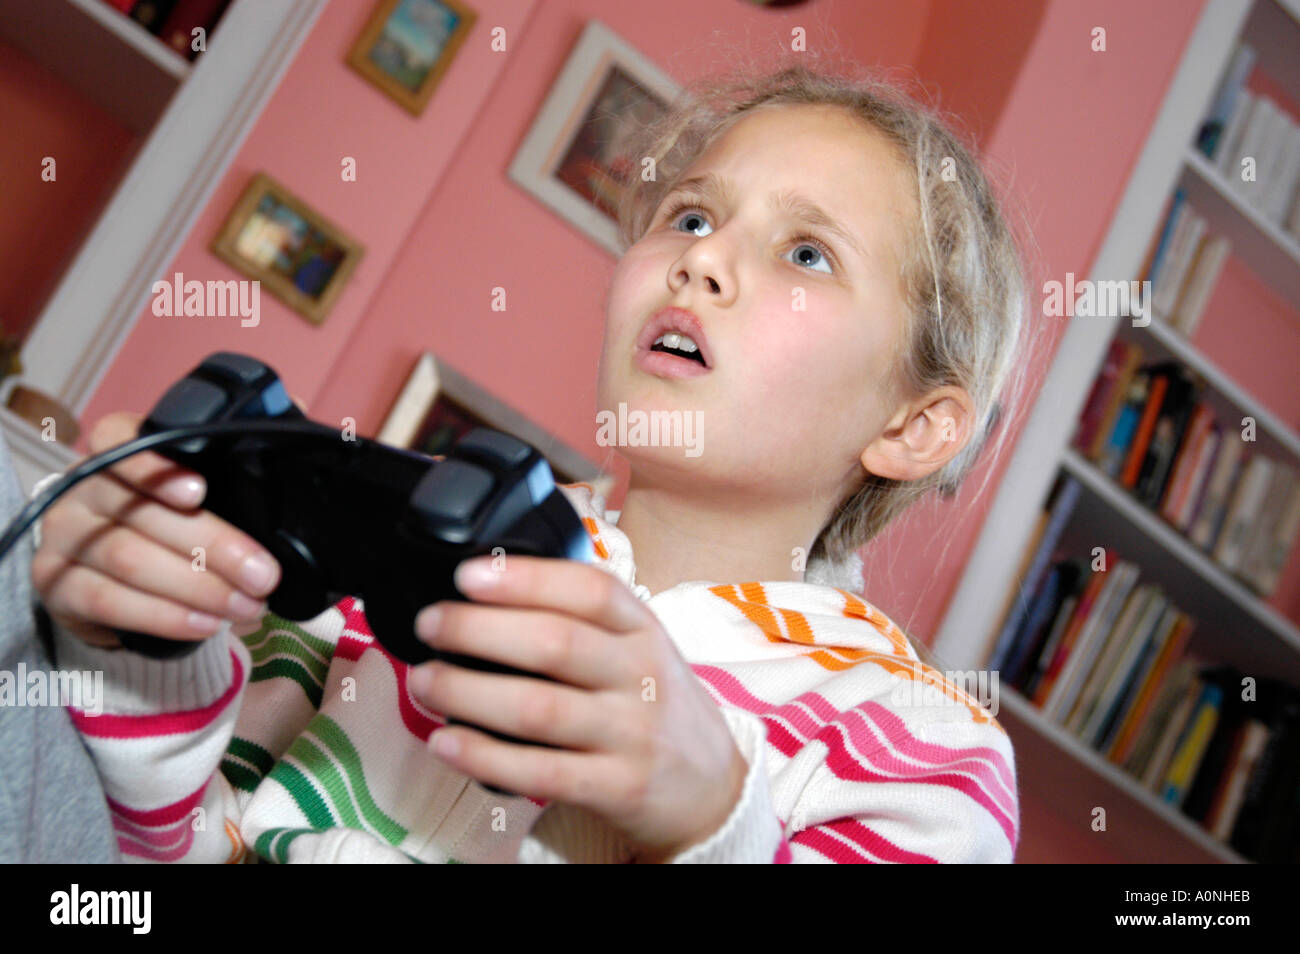 Junge Mädchen spielen Computerspiel auf Sony Playstation Konsole, England, UK Stockfoto